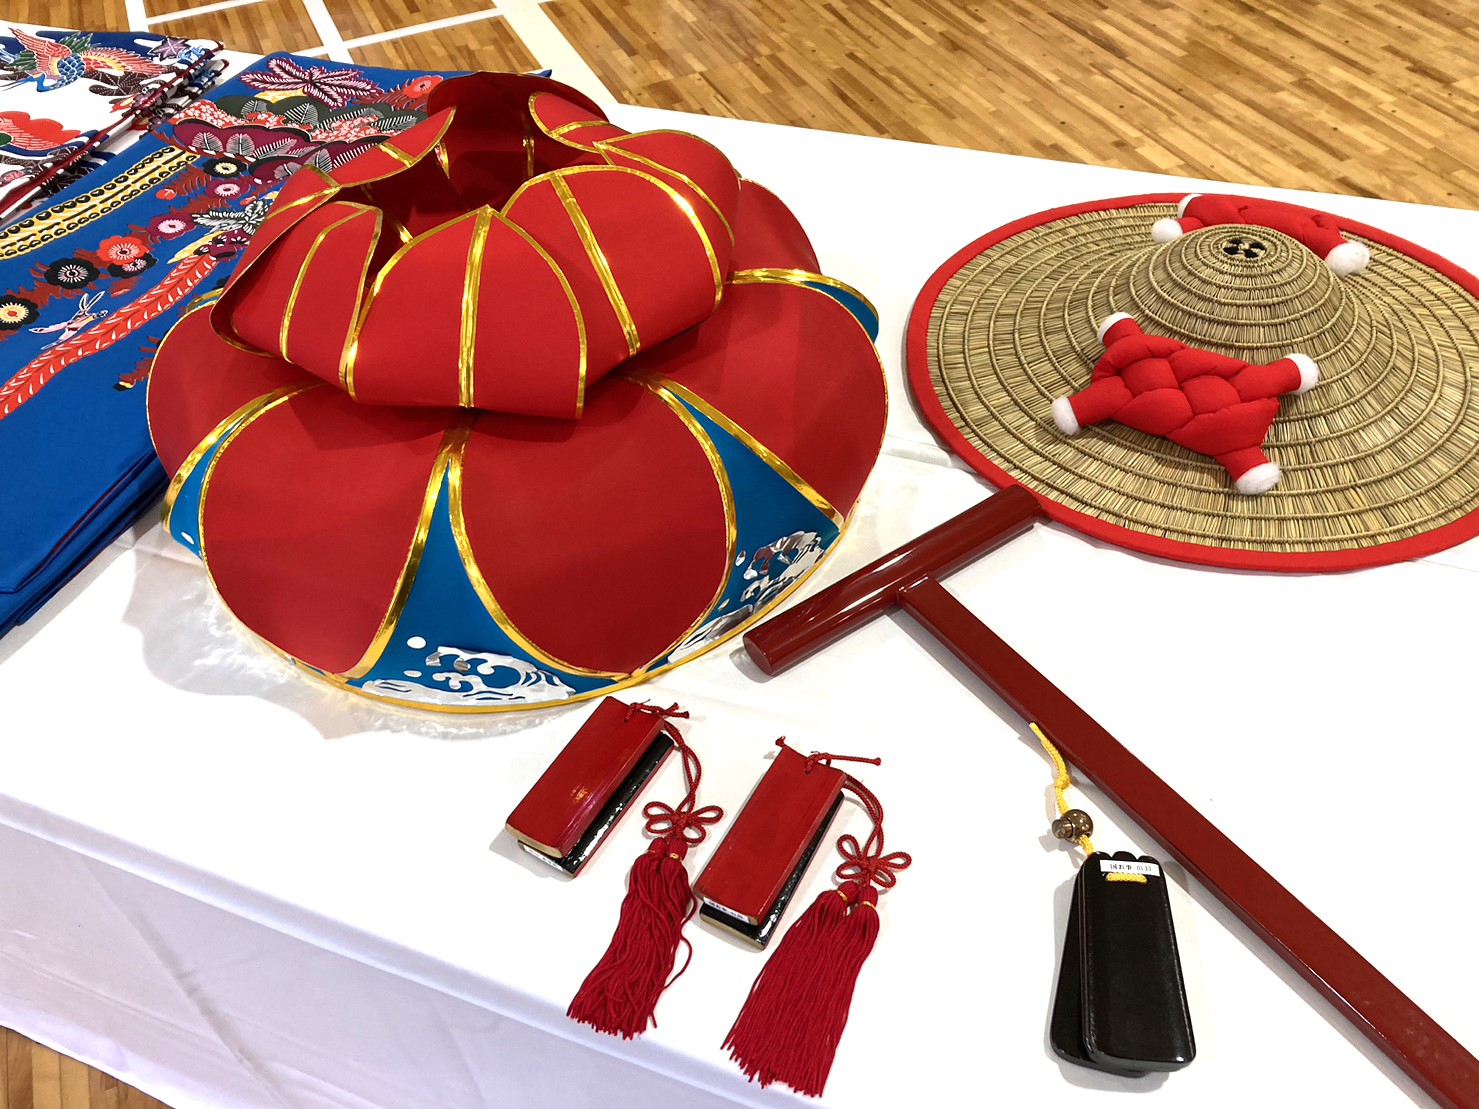 「琉球舞踊と組踊」衣装・小道具展示